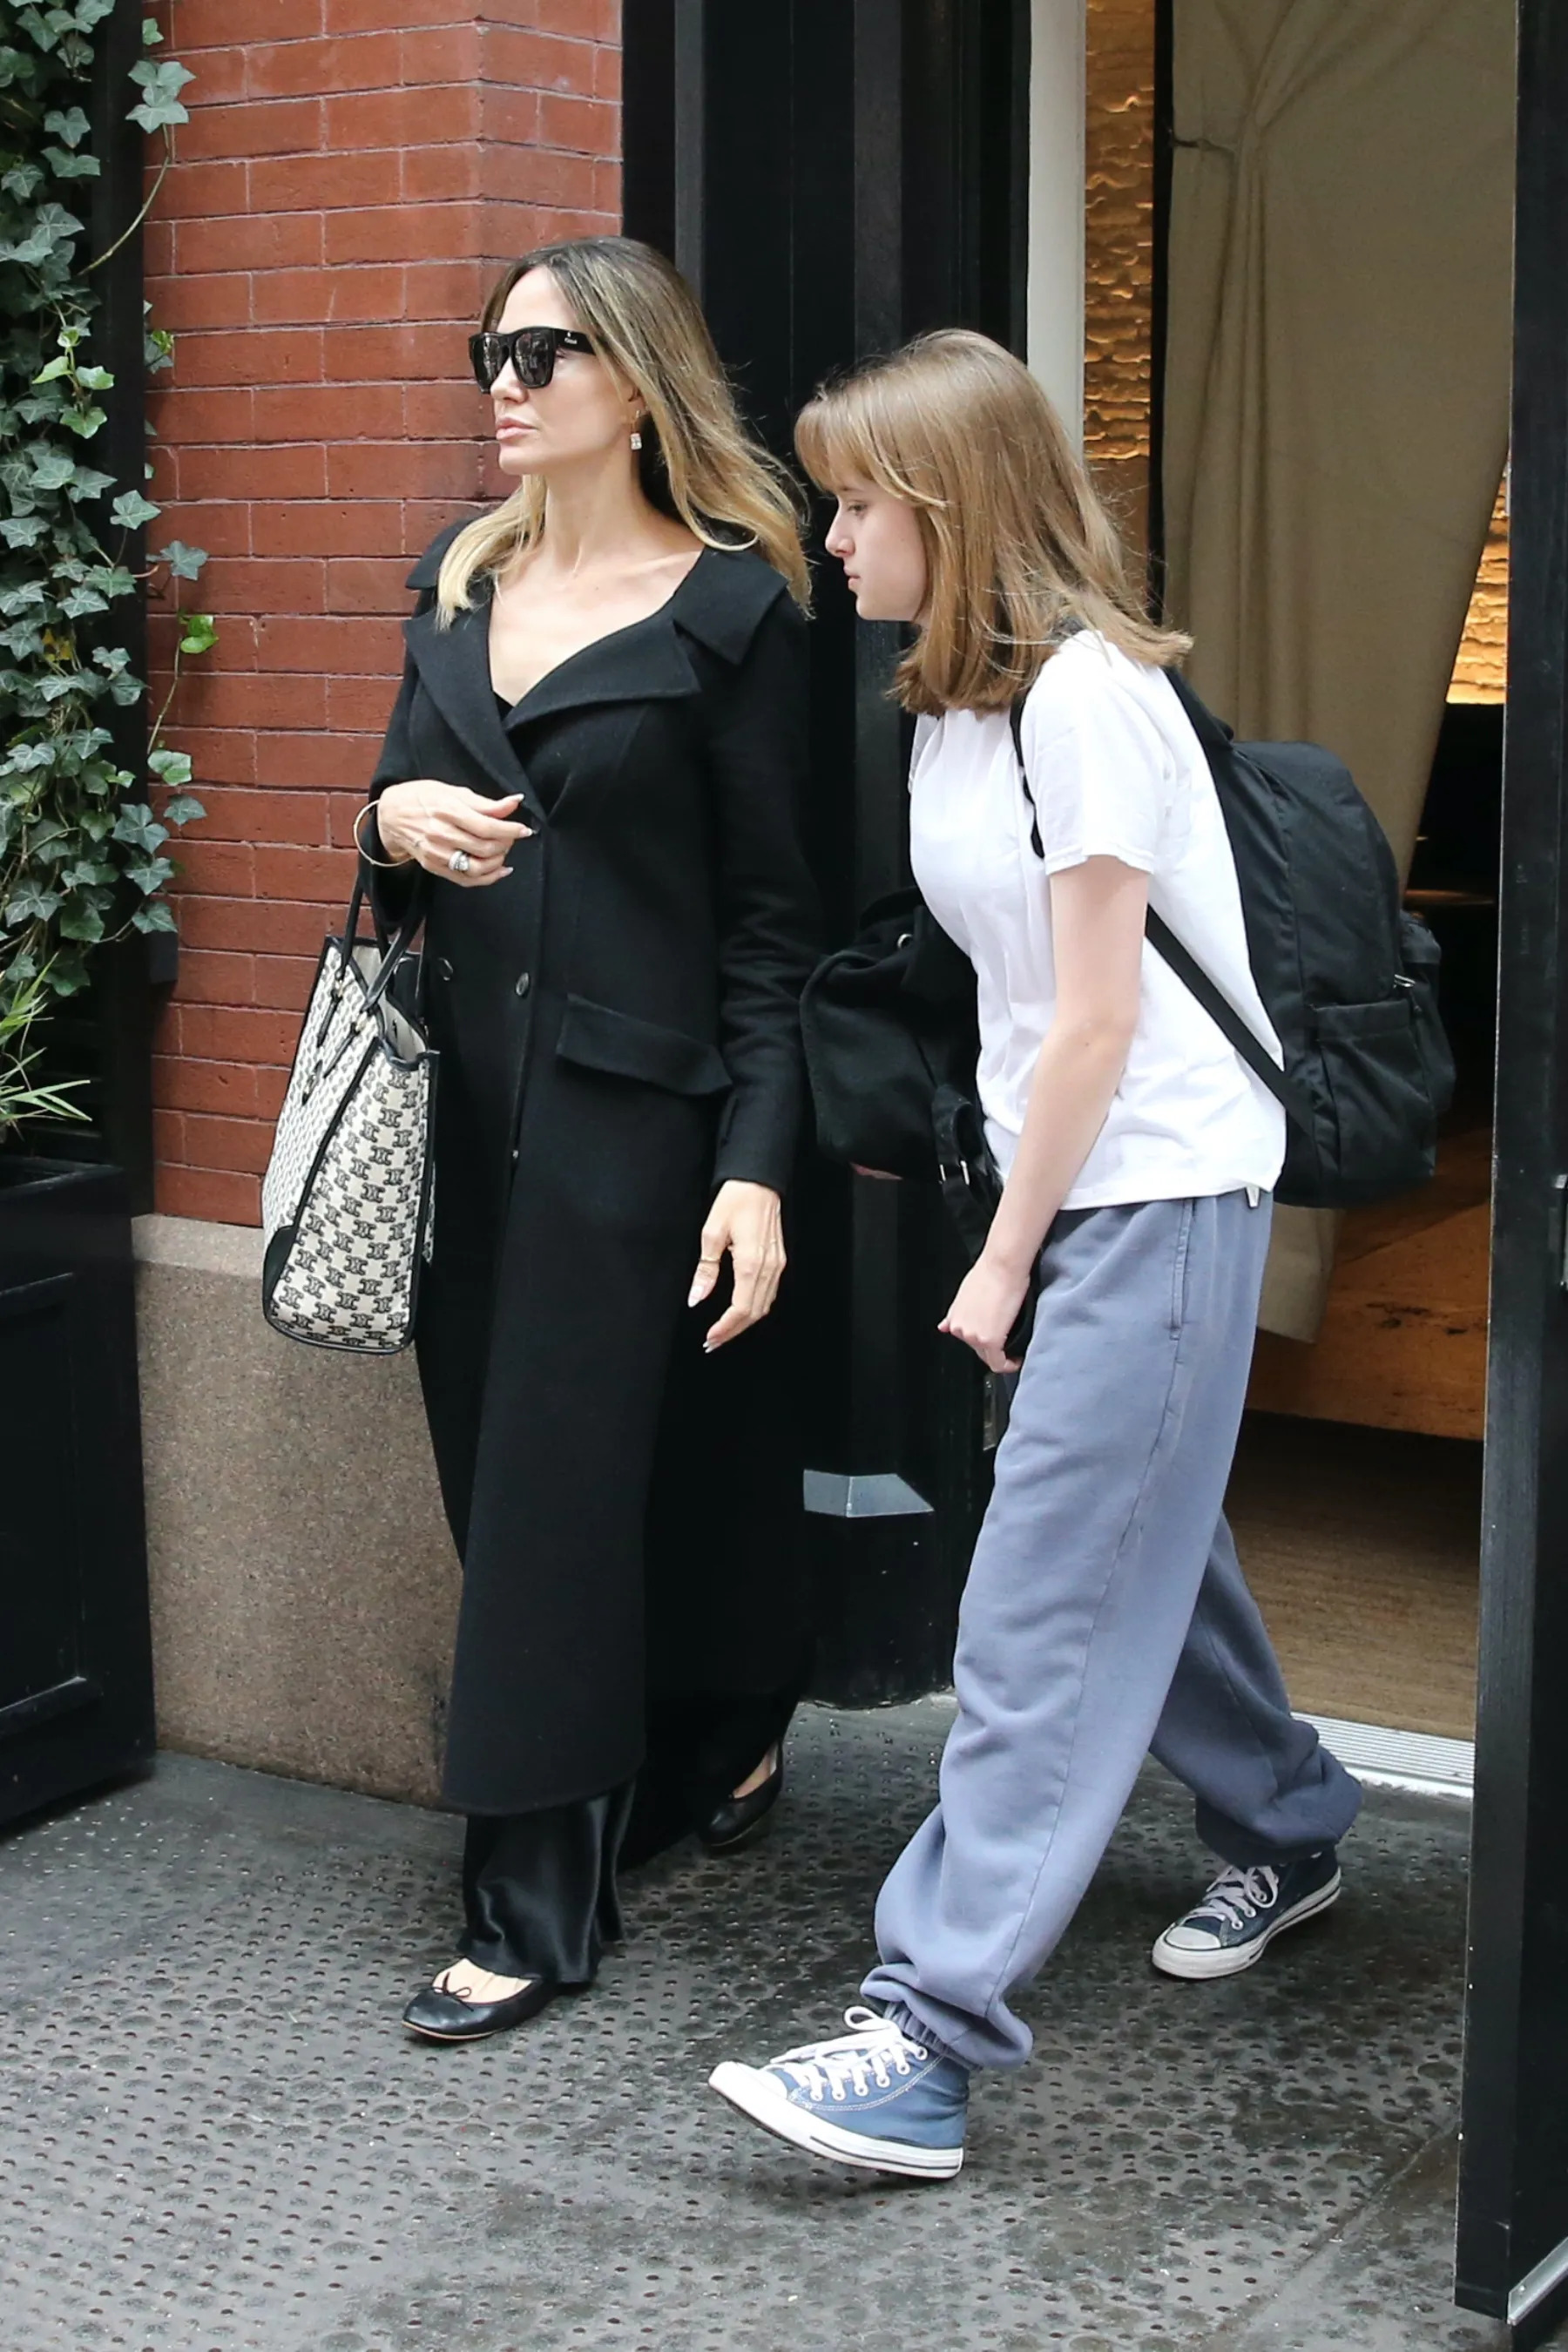 Acompanhada da filha, Angelina Jolie deixa hotel em Nova York